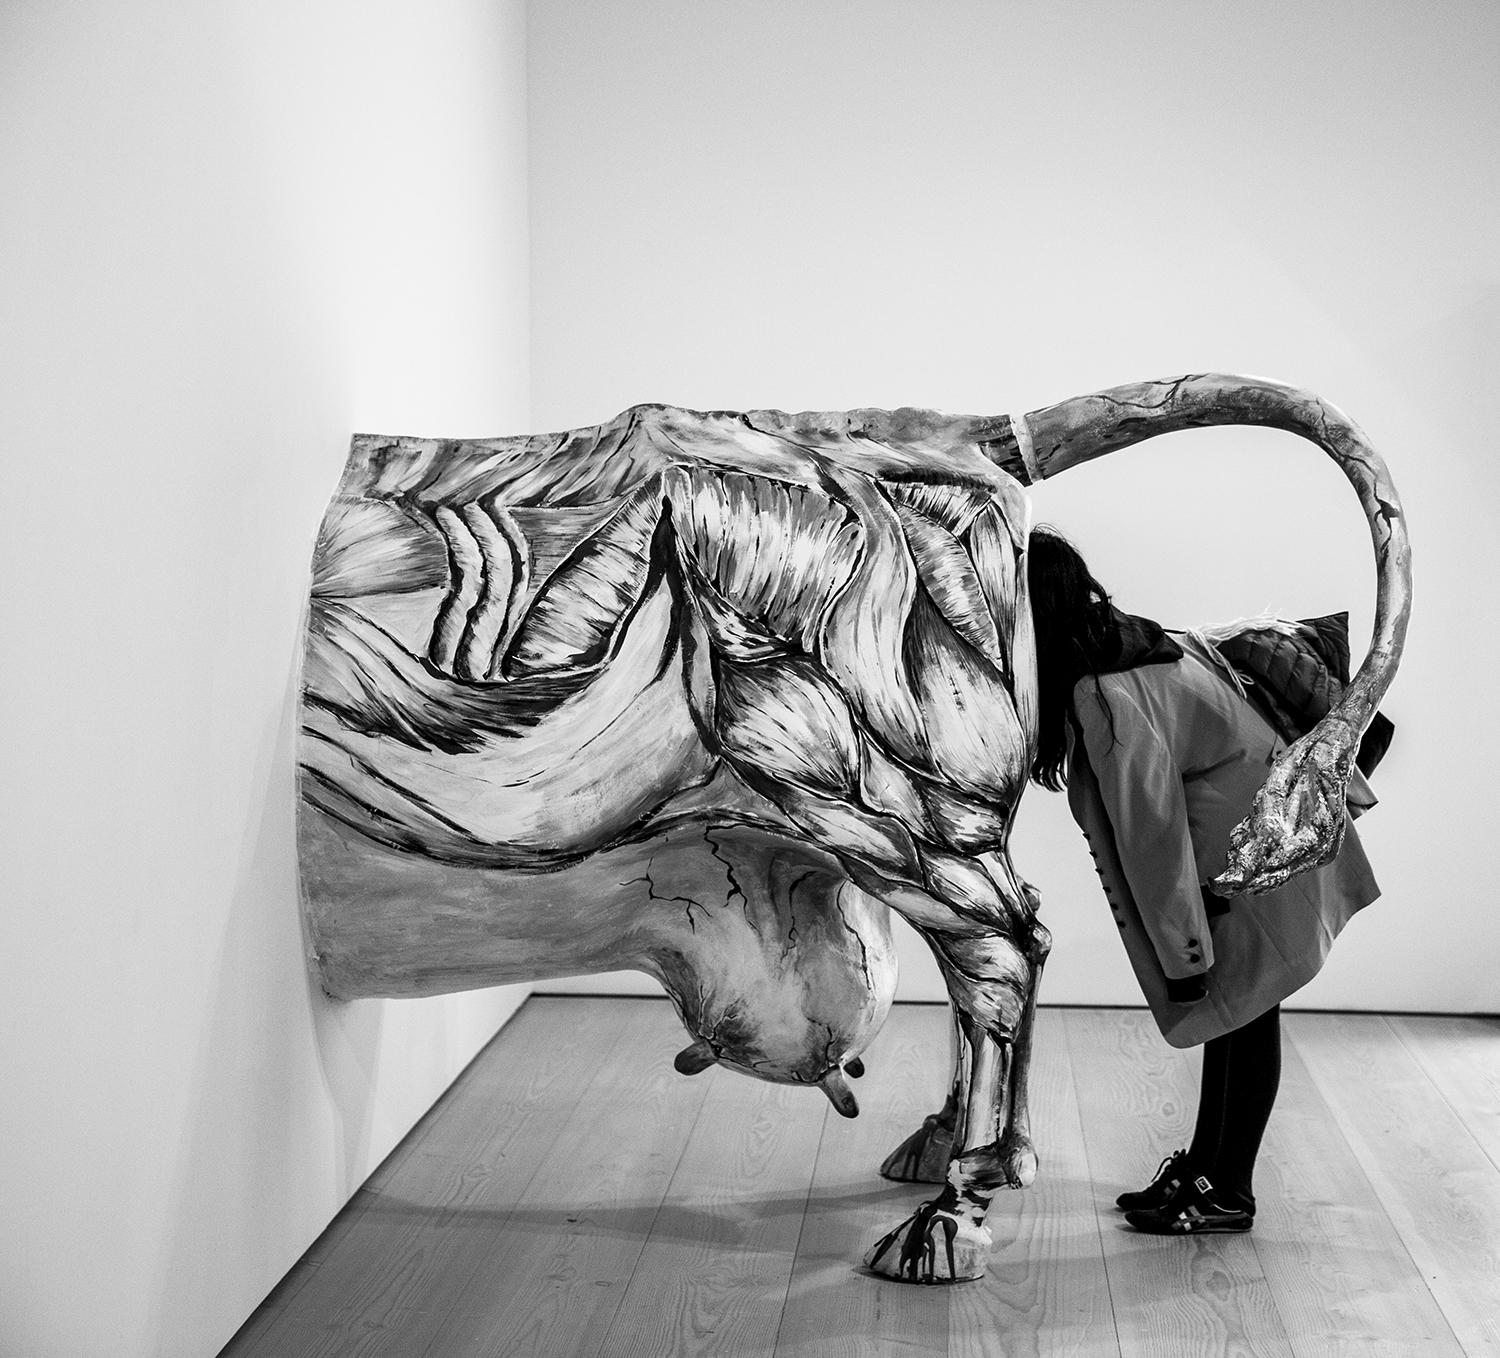 Auflage von 25 Stück
vom Künstler signiert und nummeriert

Eine Frau schaut in eine Plastik einer Kuh. Dieses Foto wurde in einem Museum in Berlin aufgenommen.

JJK ist ein Pseudonym für einen der erfolgreichsten Fotokünstler der Welt.
In seiner